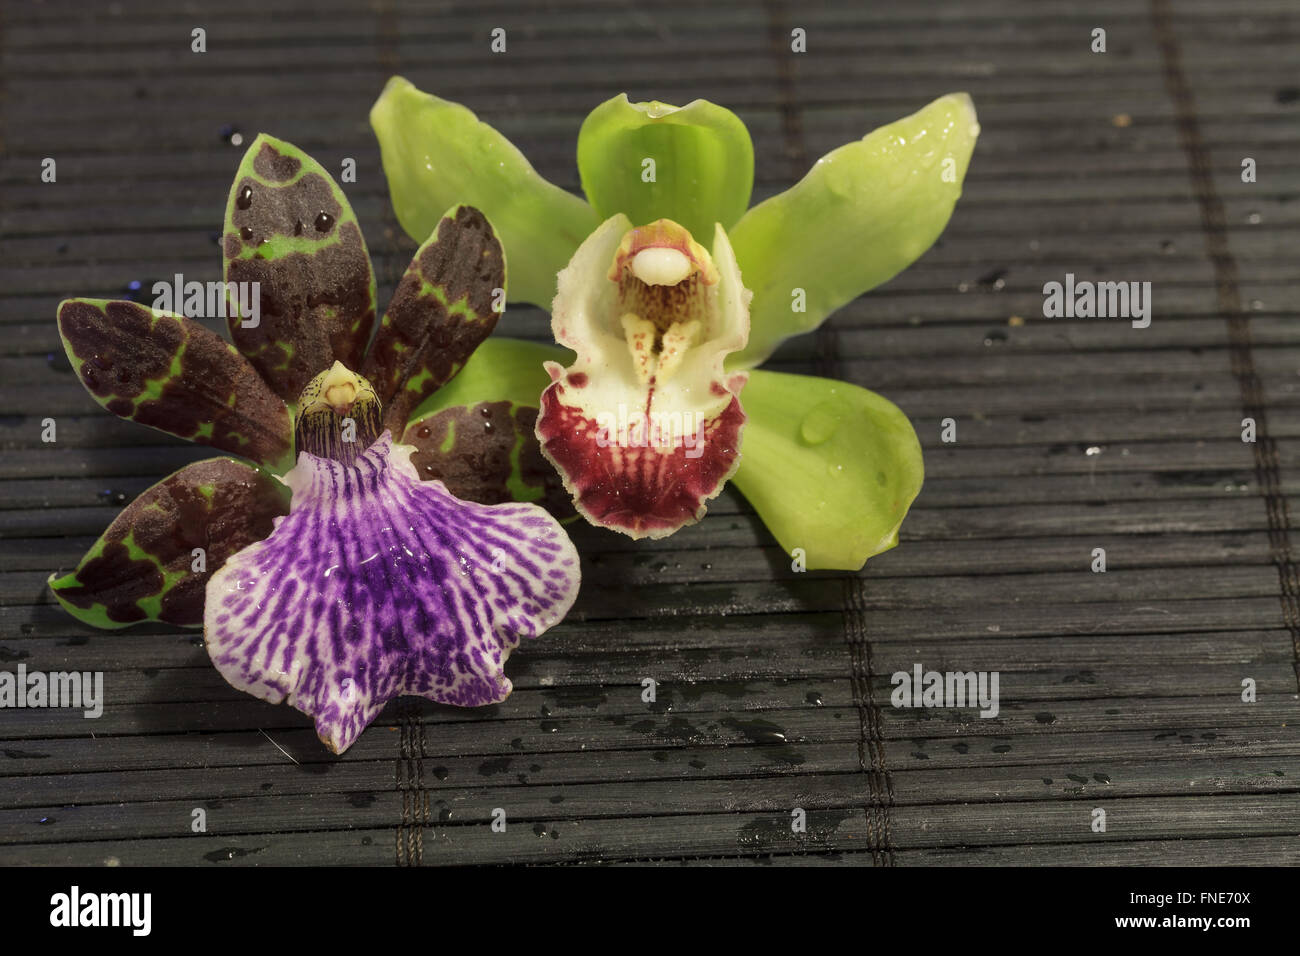 Orchidée violet et vert, espèce Zygopetalum, à côté d'une espèce Cymbidium verte et rouge sur un fond noir mat en bambou Banque D'Images